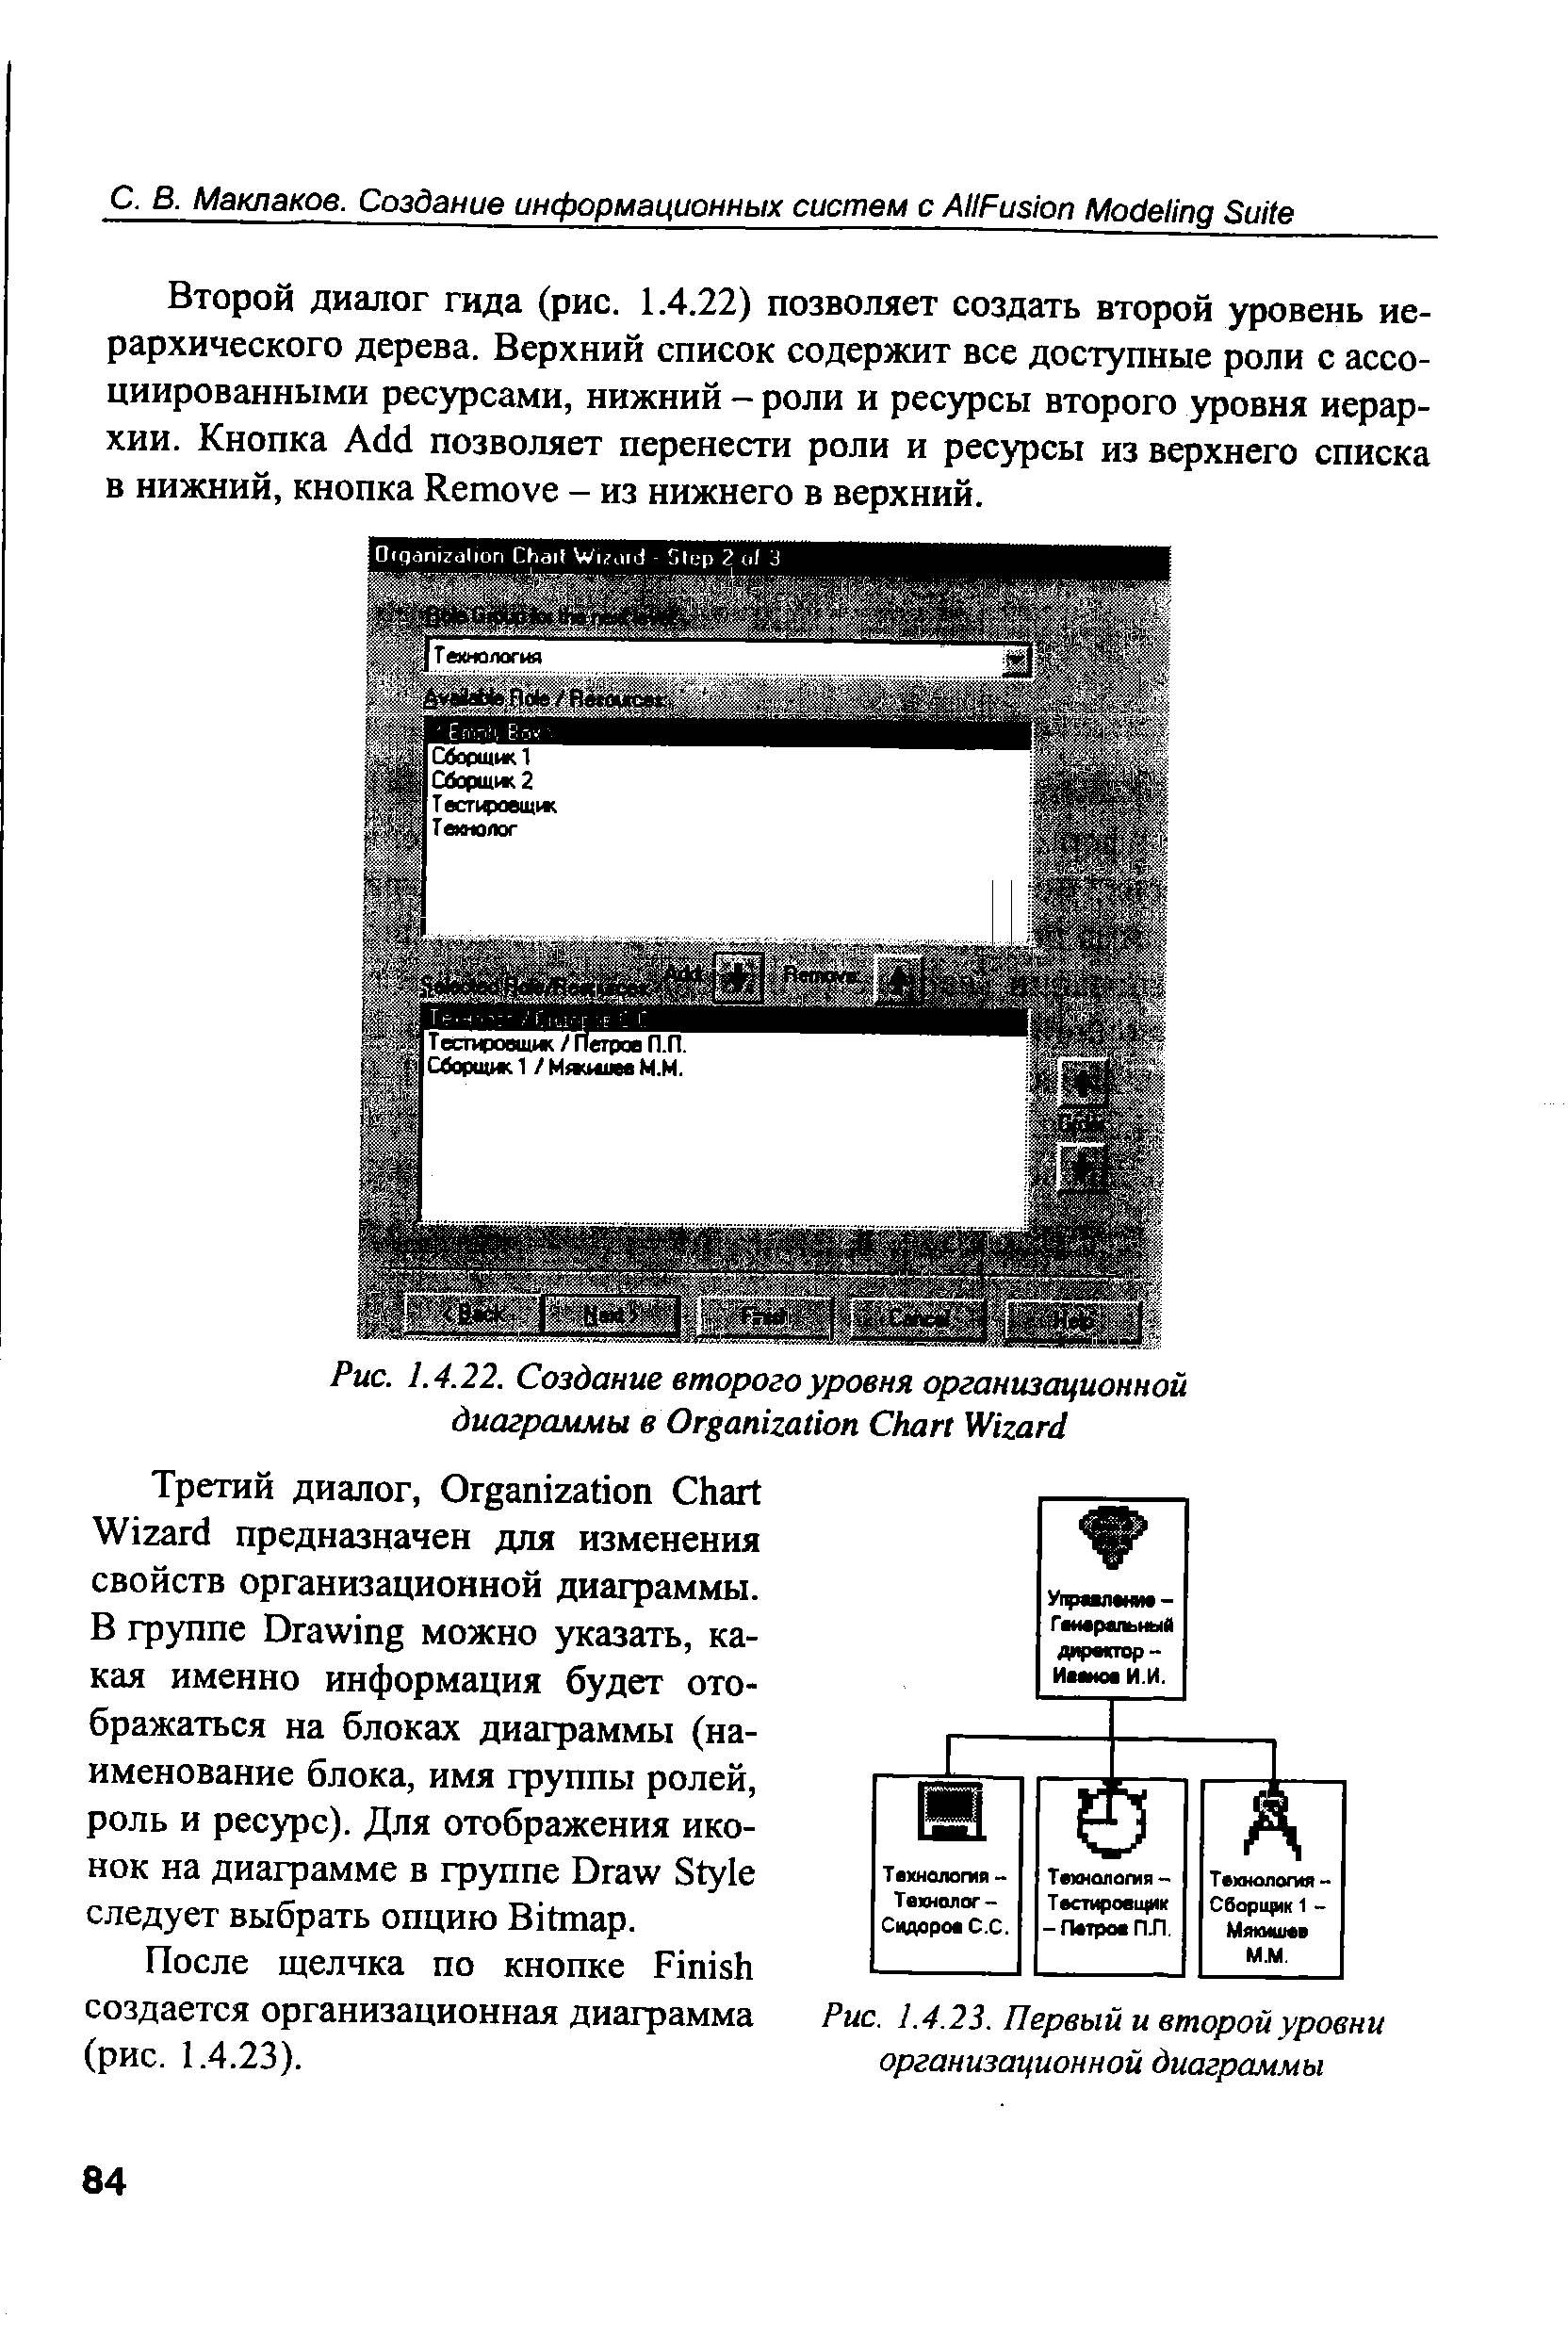 Рис. 1.4.23. Первый и второй уровни организационной диаграммы
